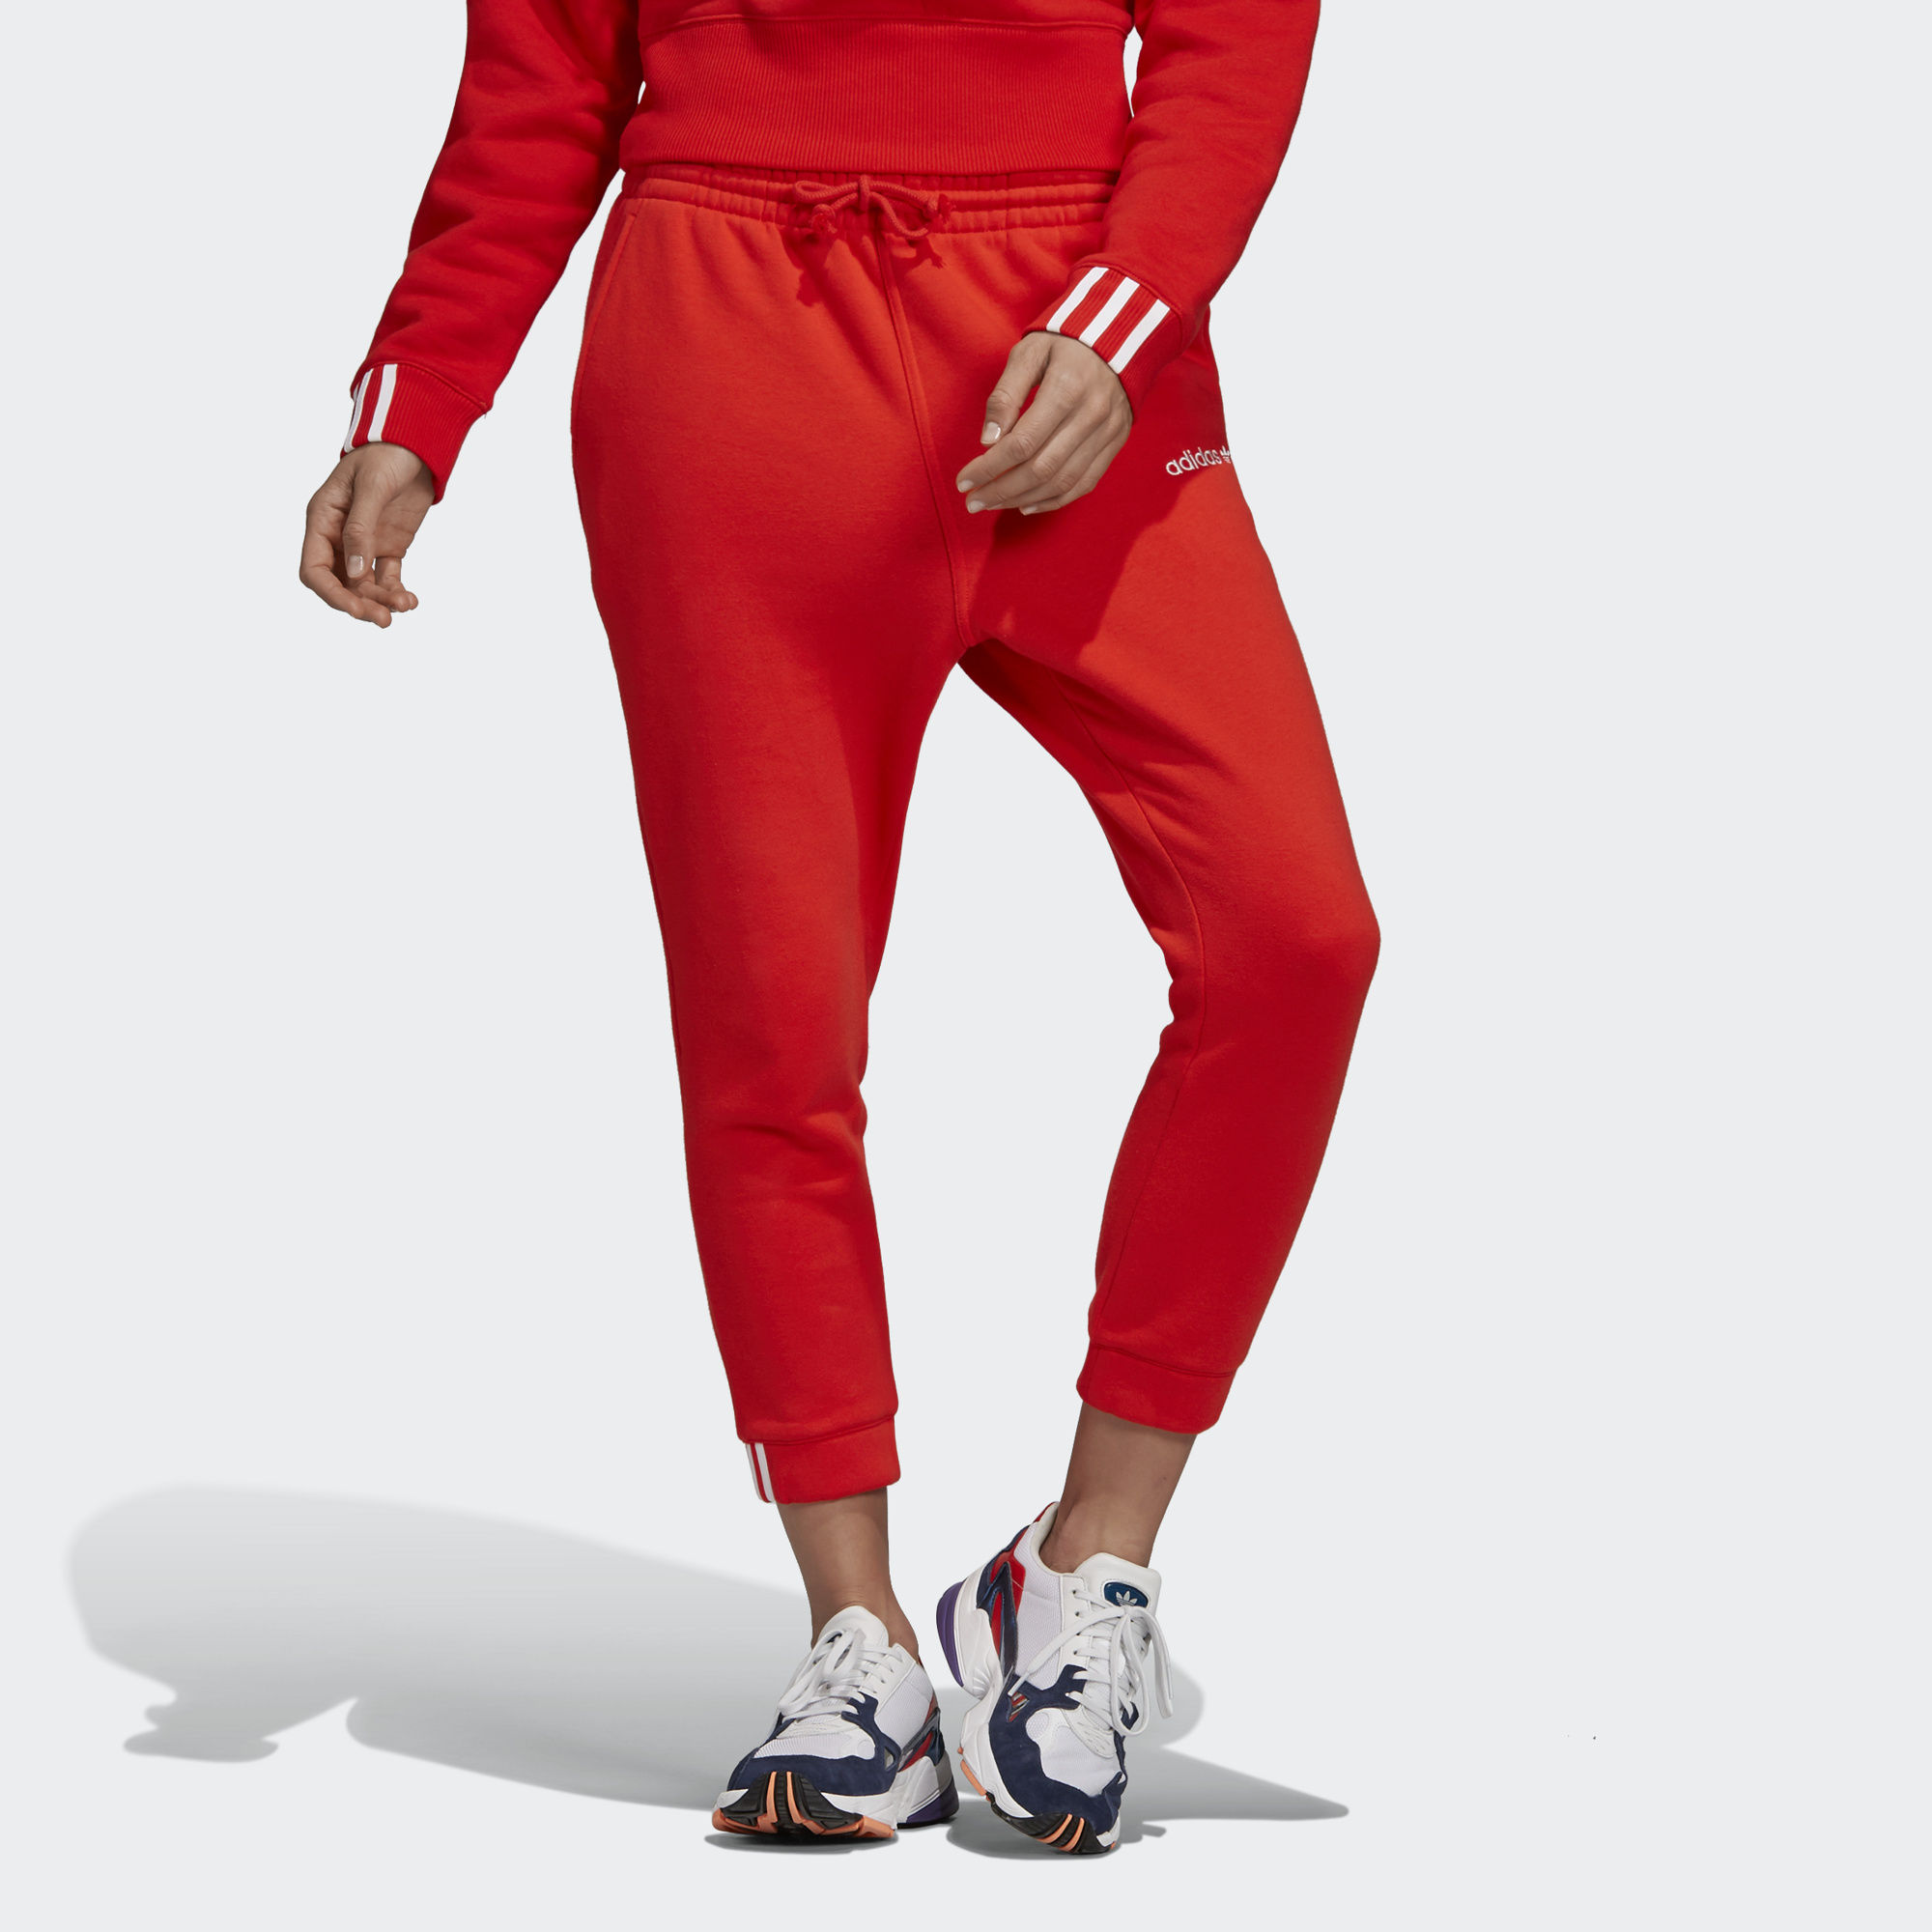 Красные штаны адидас. Брюки coeeze adidas Originals. Adidas Originals Red штаны. Красные спортивные штаны адидас. Красные штаны адидас женские.